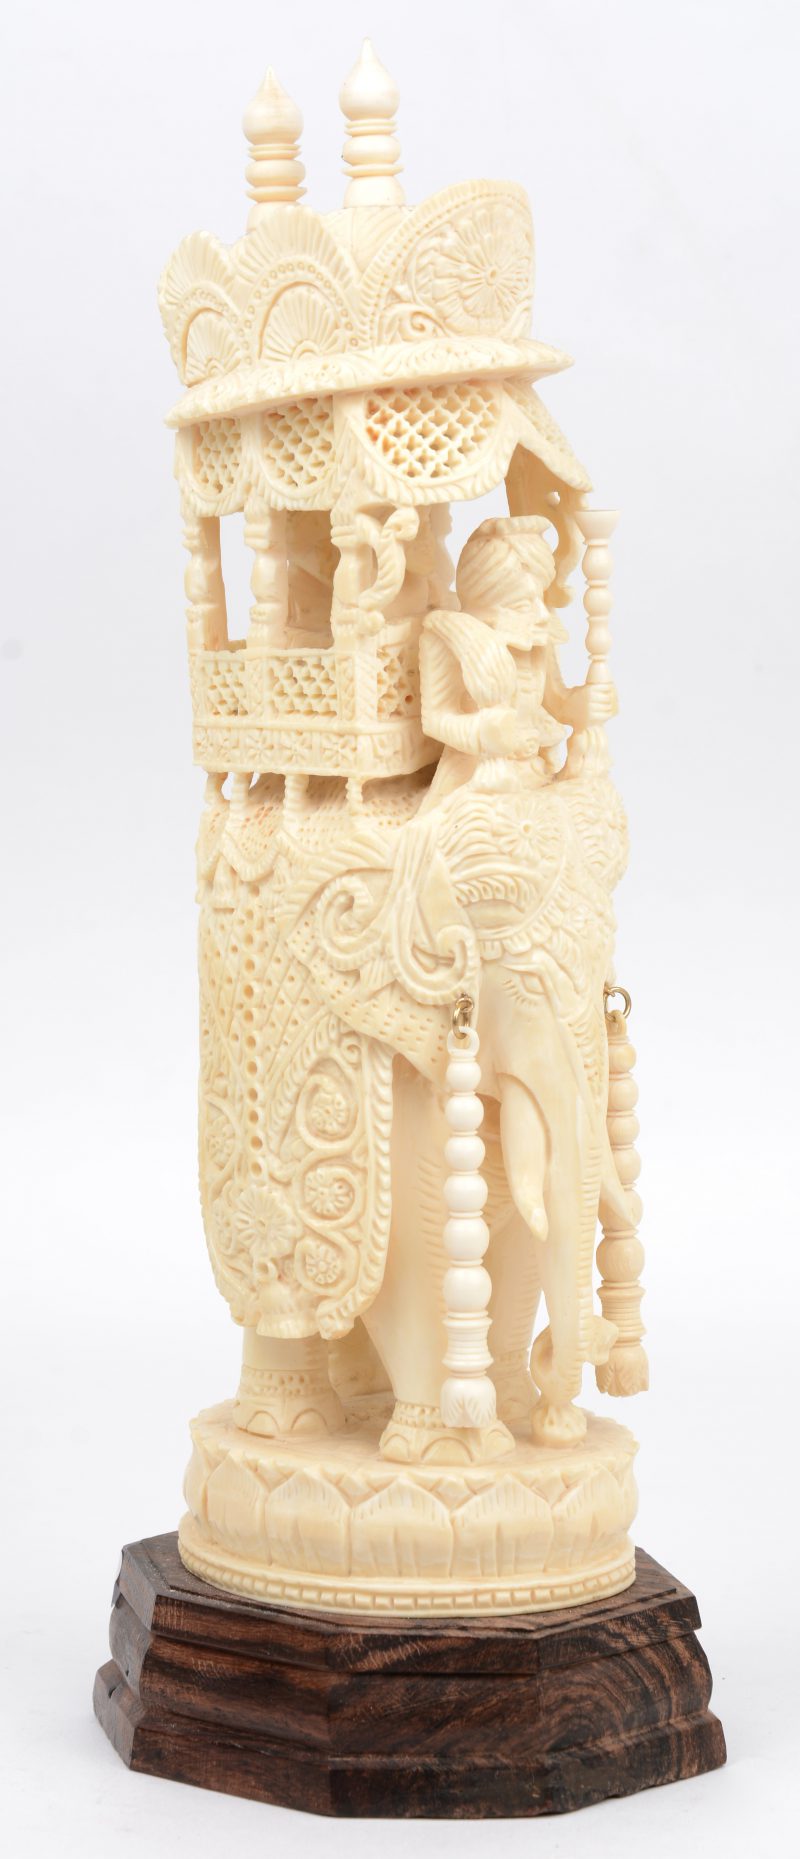 Een rijkelijk uitgewerkte olifant met personages in een opengewerkt rijtuig. Indisch werk. Op houten sokkel.